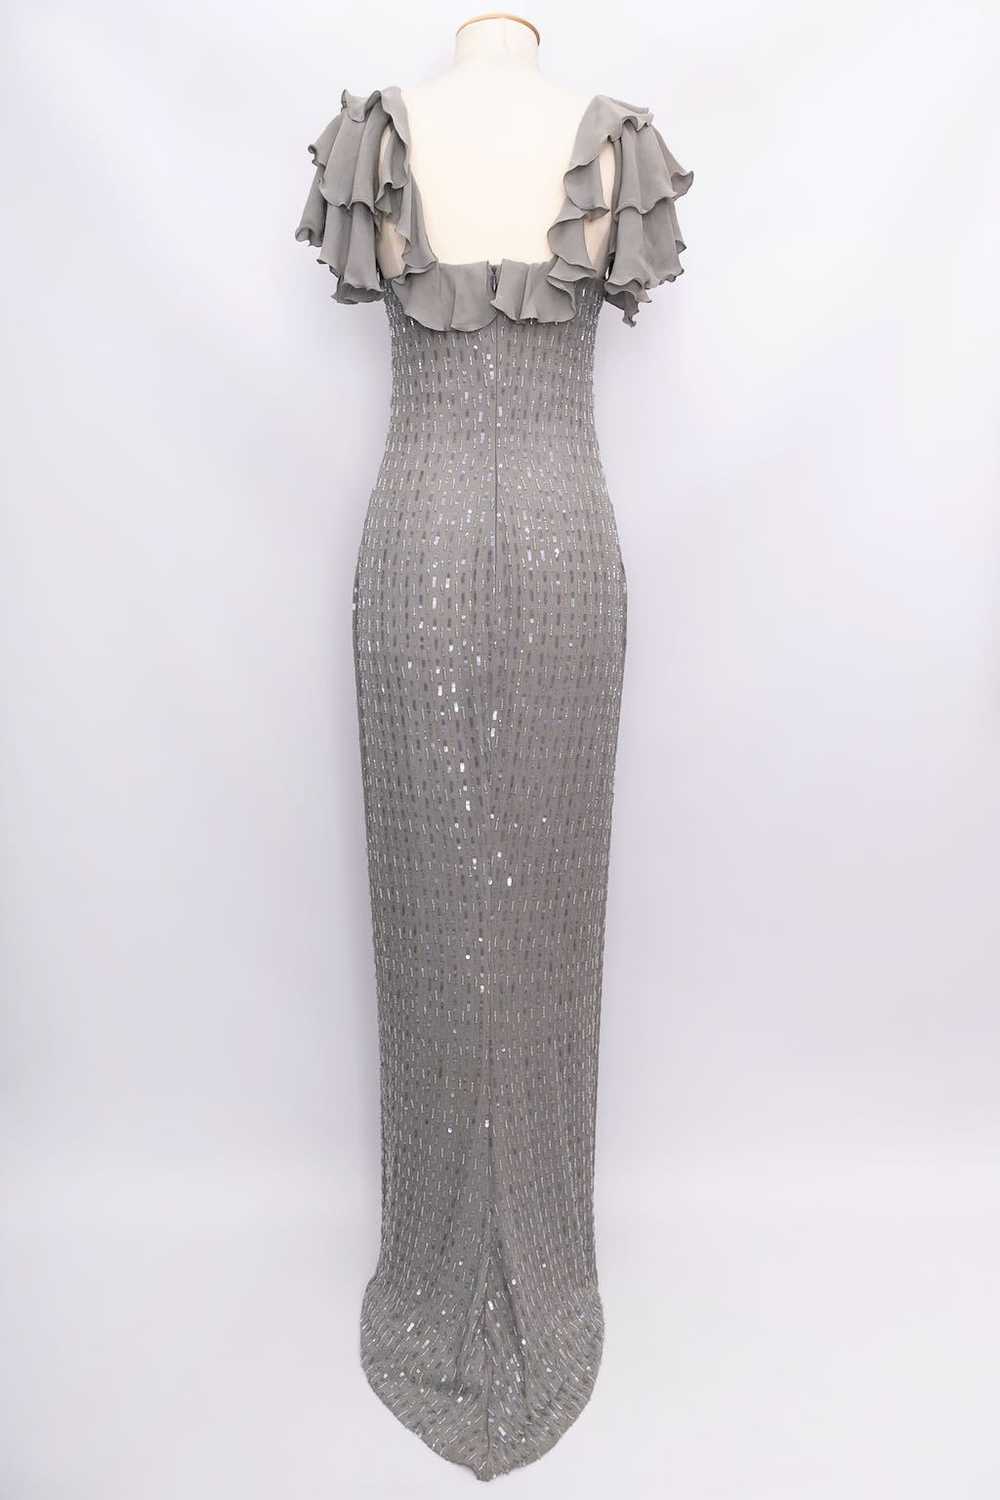 Loris Azzaro grey silk dress - image 3